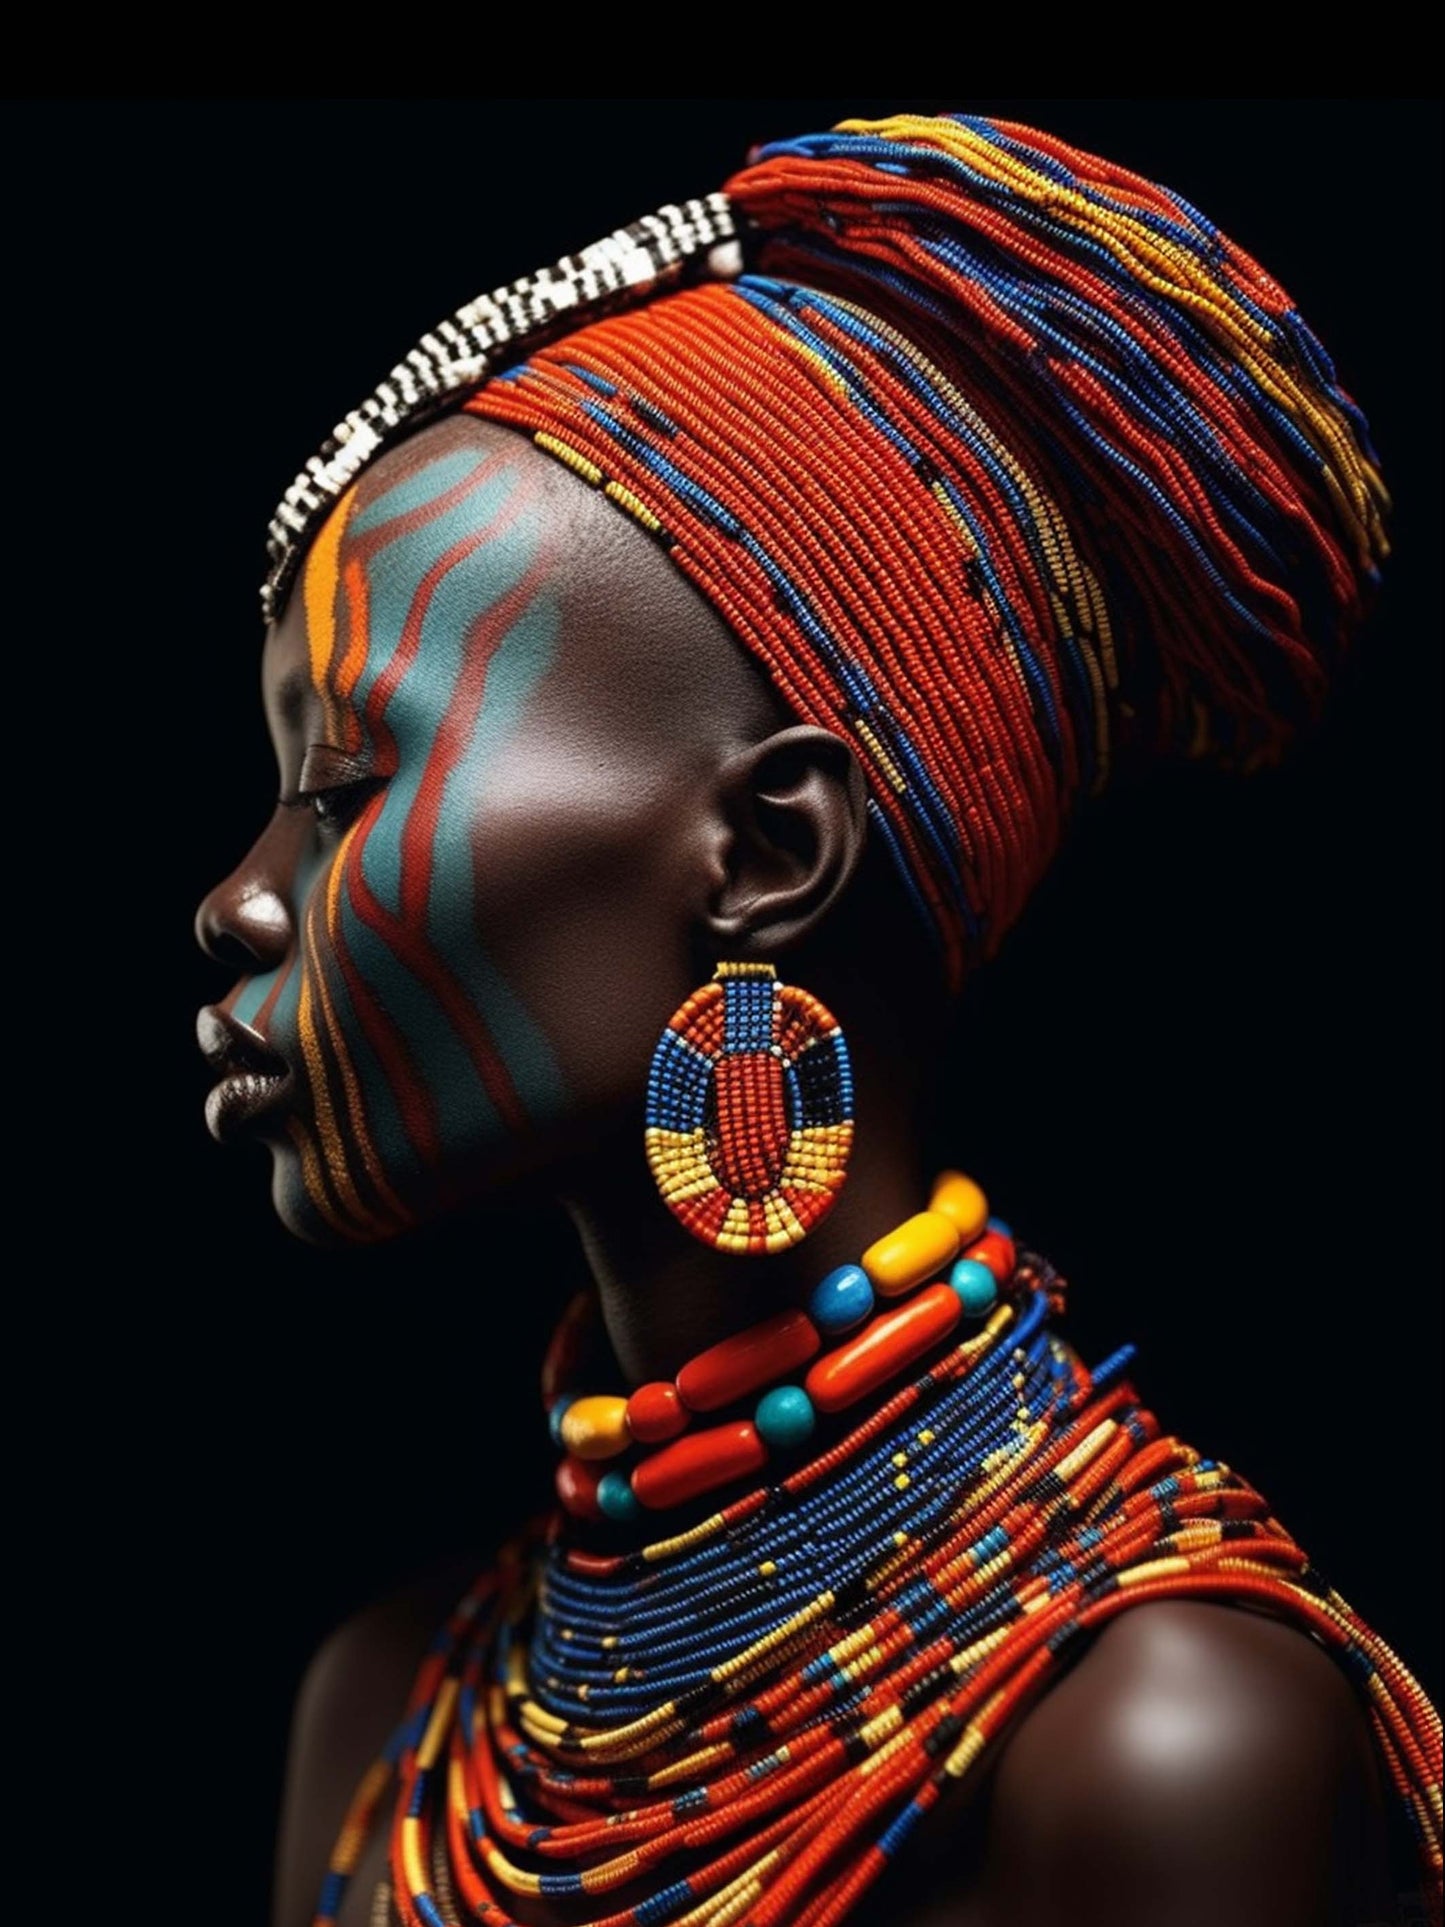 le tableau de Profil d'une femme noire  met en valeur l'identité et la force de la femme africaine, magnifiquement mise en lumière par une parure de perles rouges